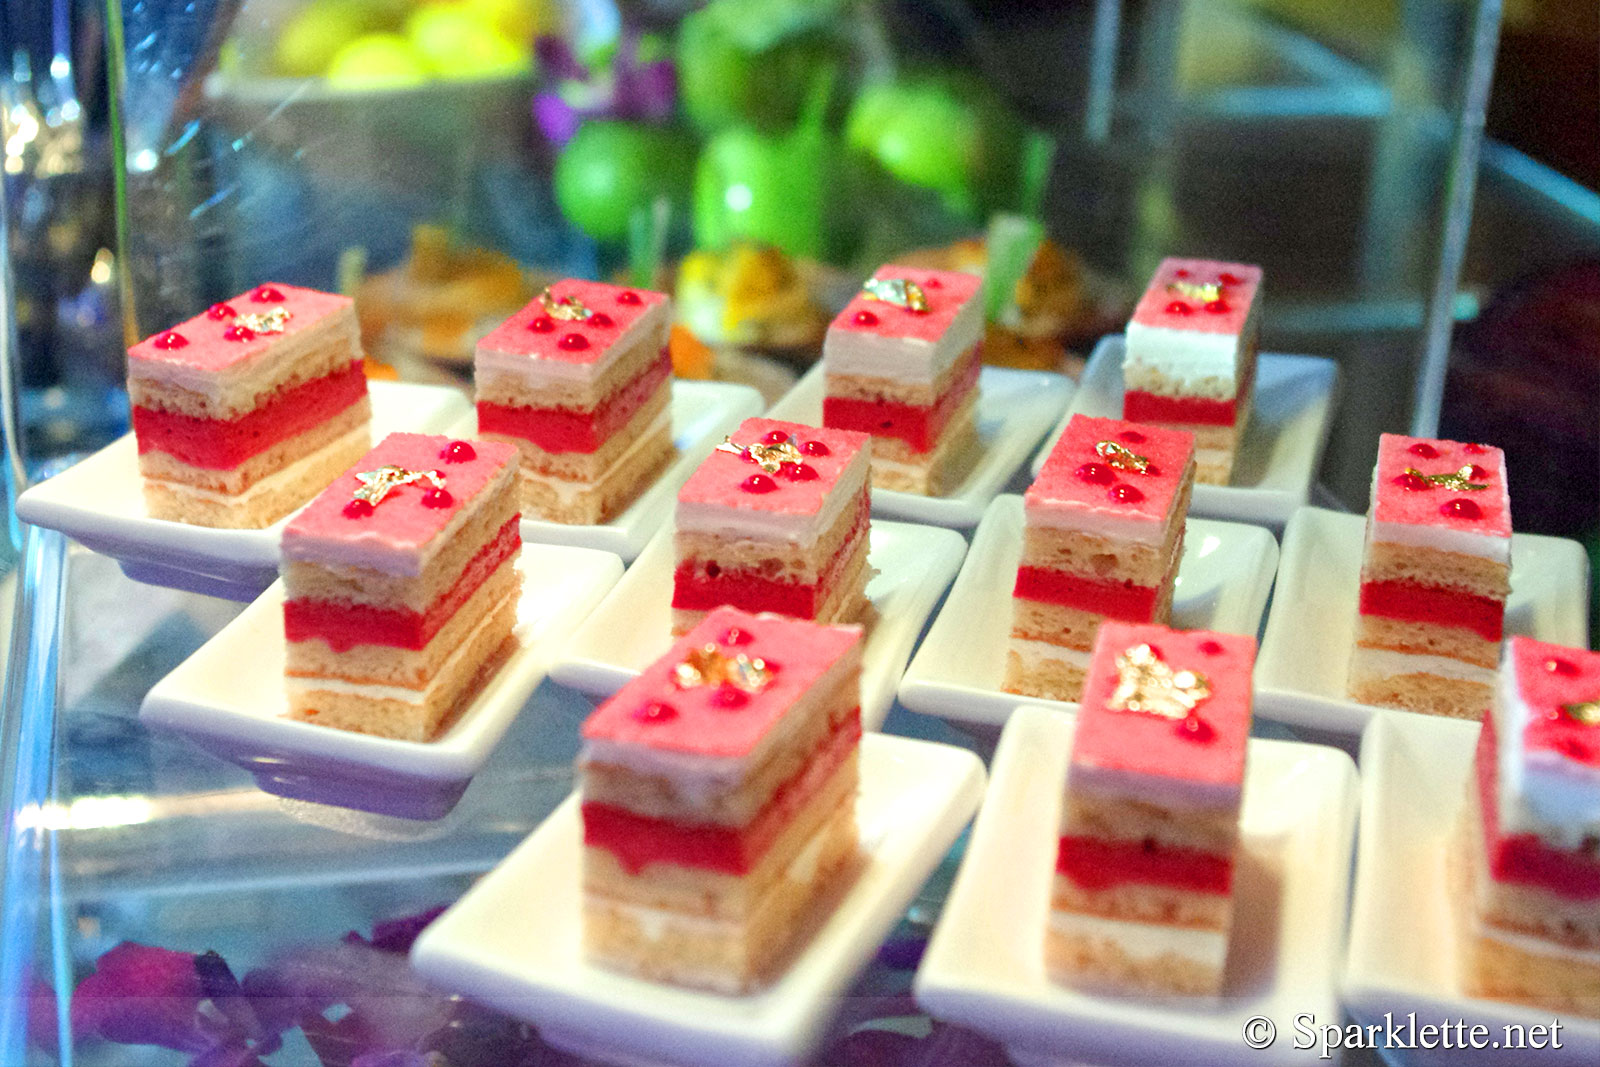 Miniature cakes